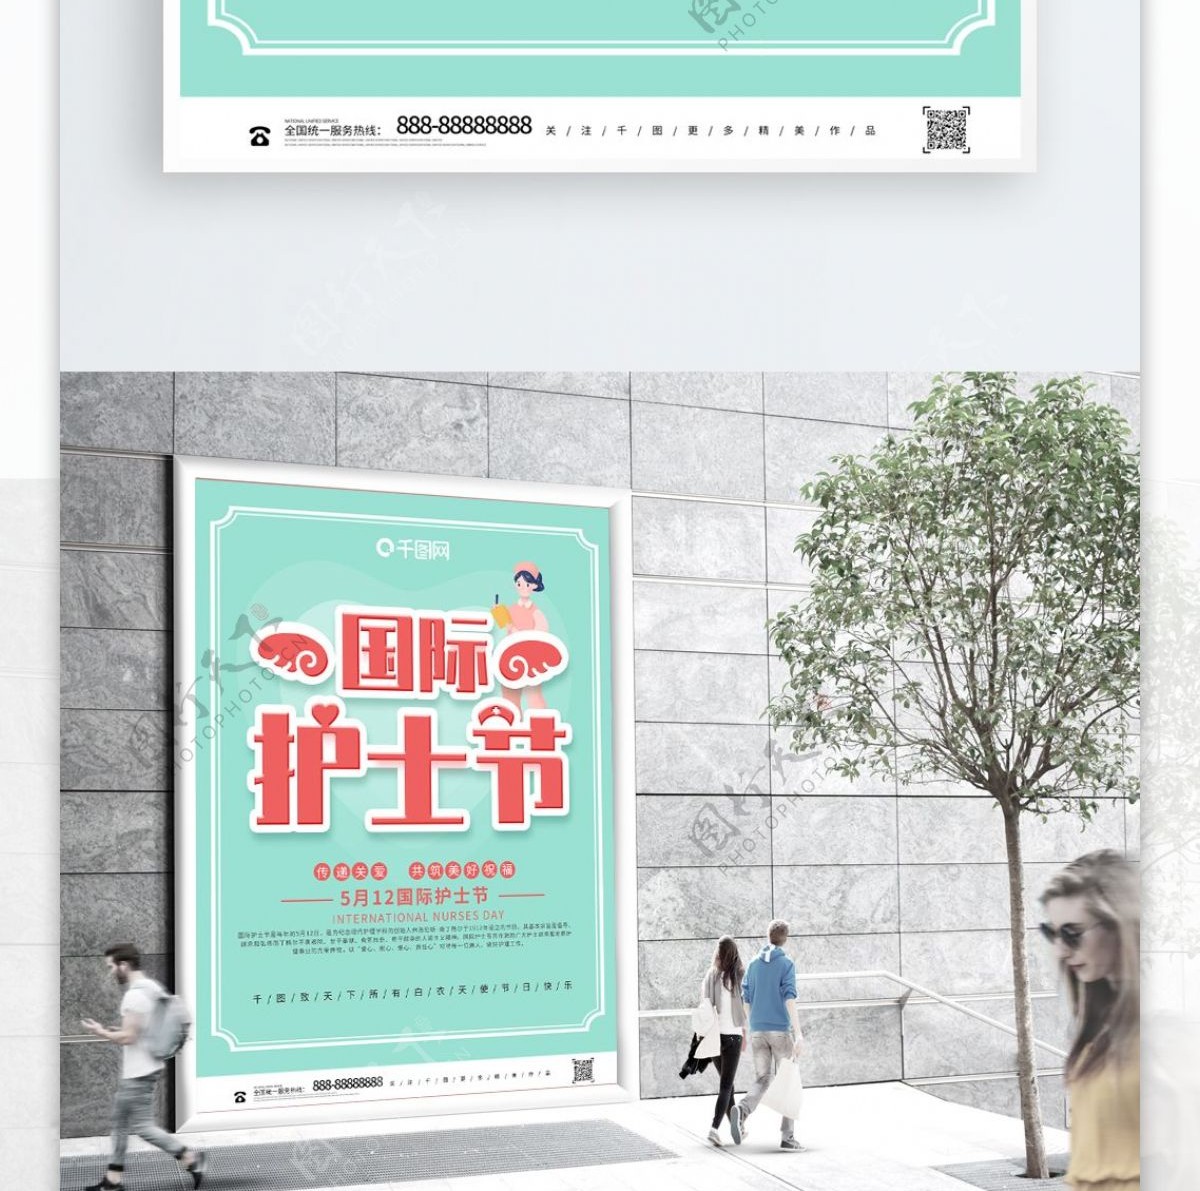 简约大气国际护士节节日公益宣传海报